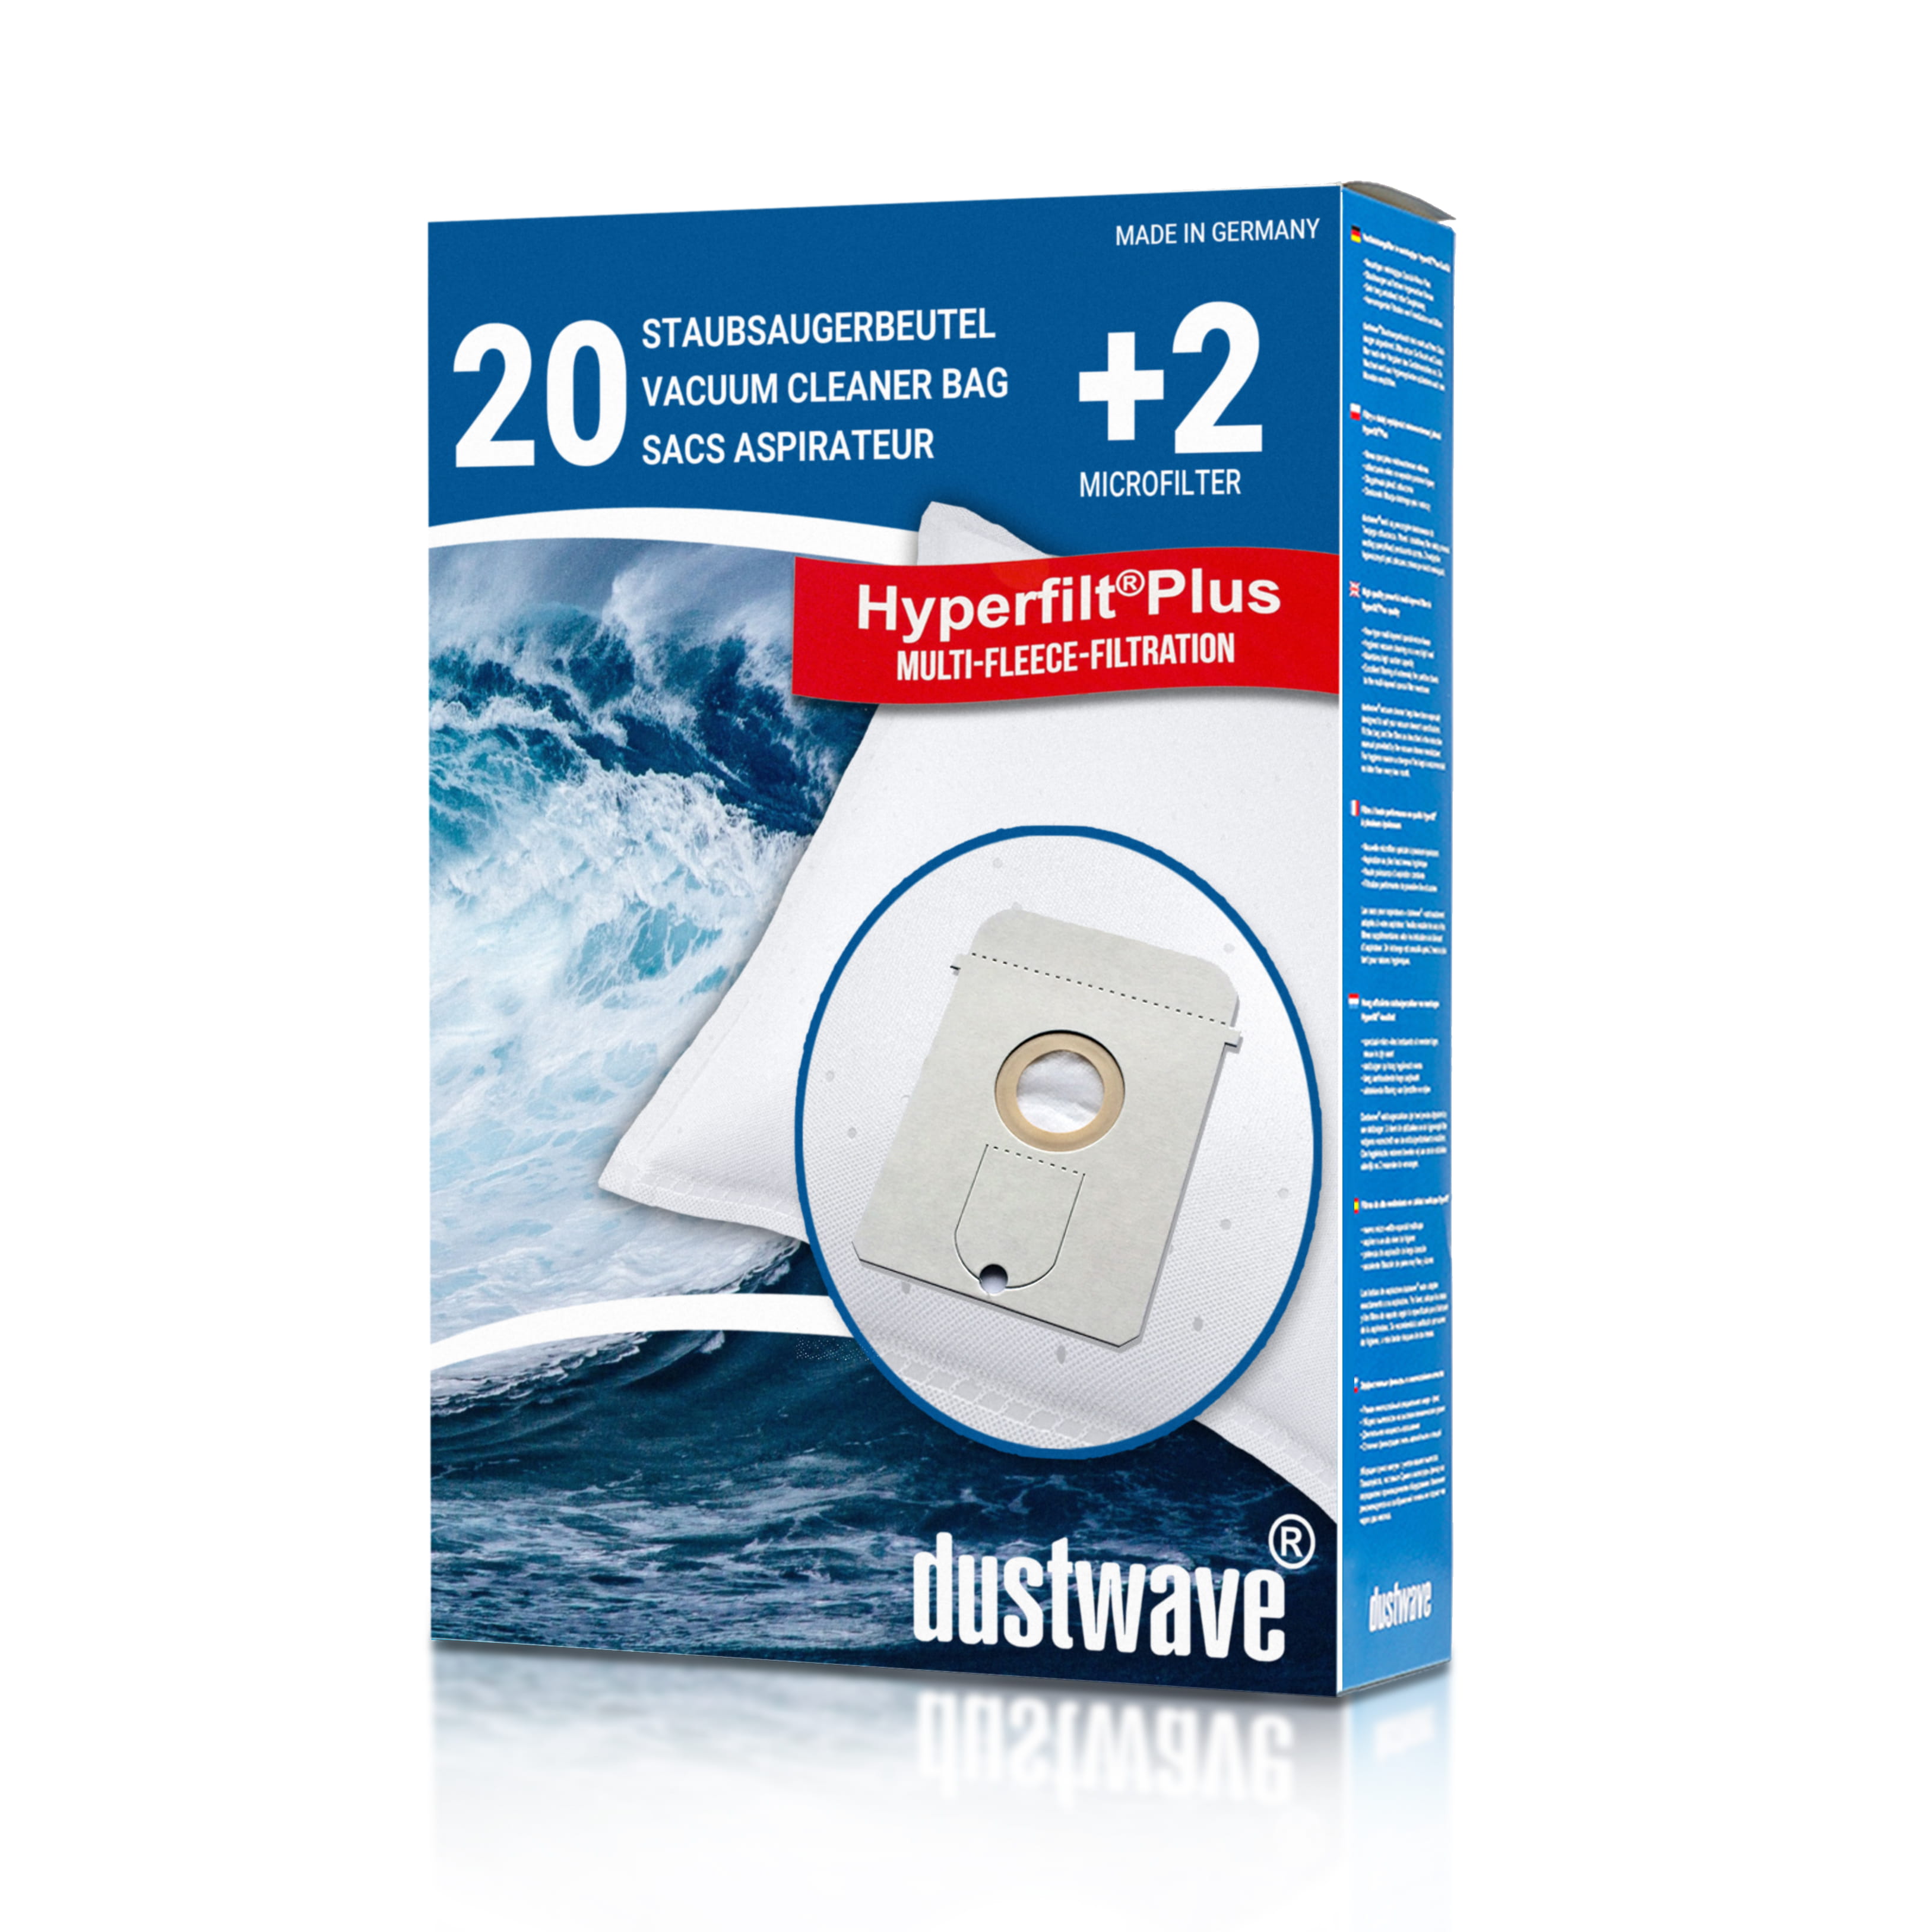 Dustwave® 20 Staubsaugerbeutel für AEG Vampyr 7301 Electronic - hocheffizient, mehrlagiges Mikrovlies mit Hygieneverschluss - Made in Germany